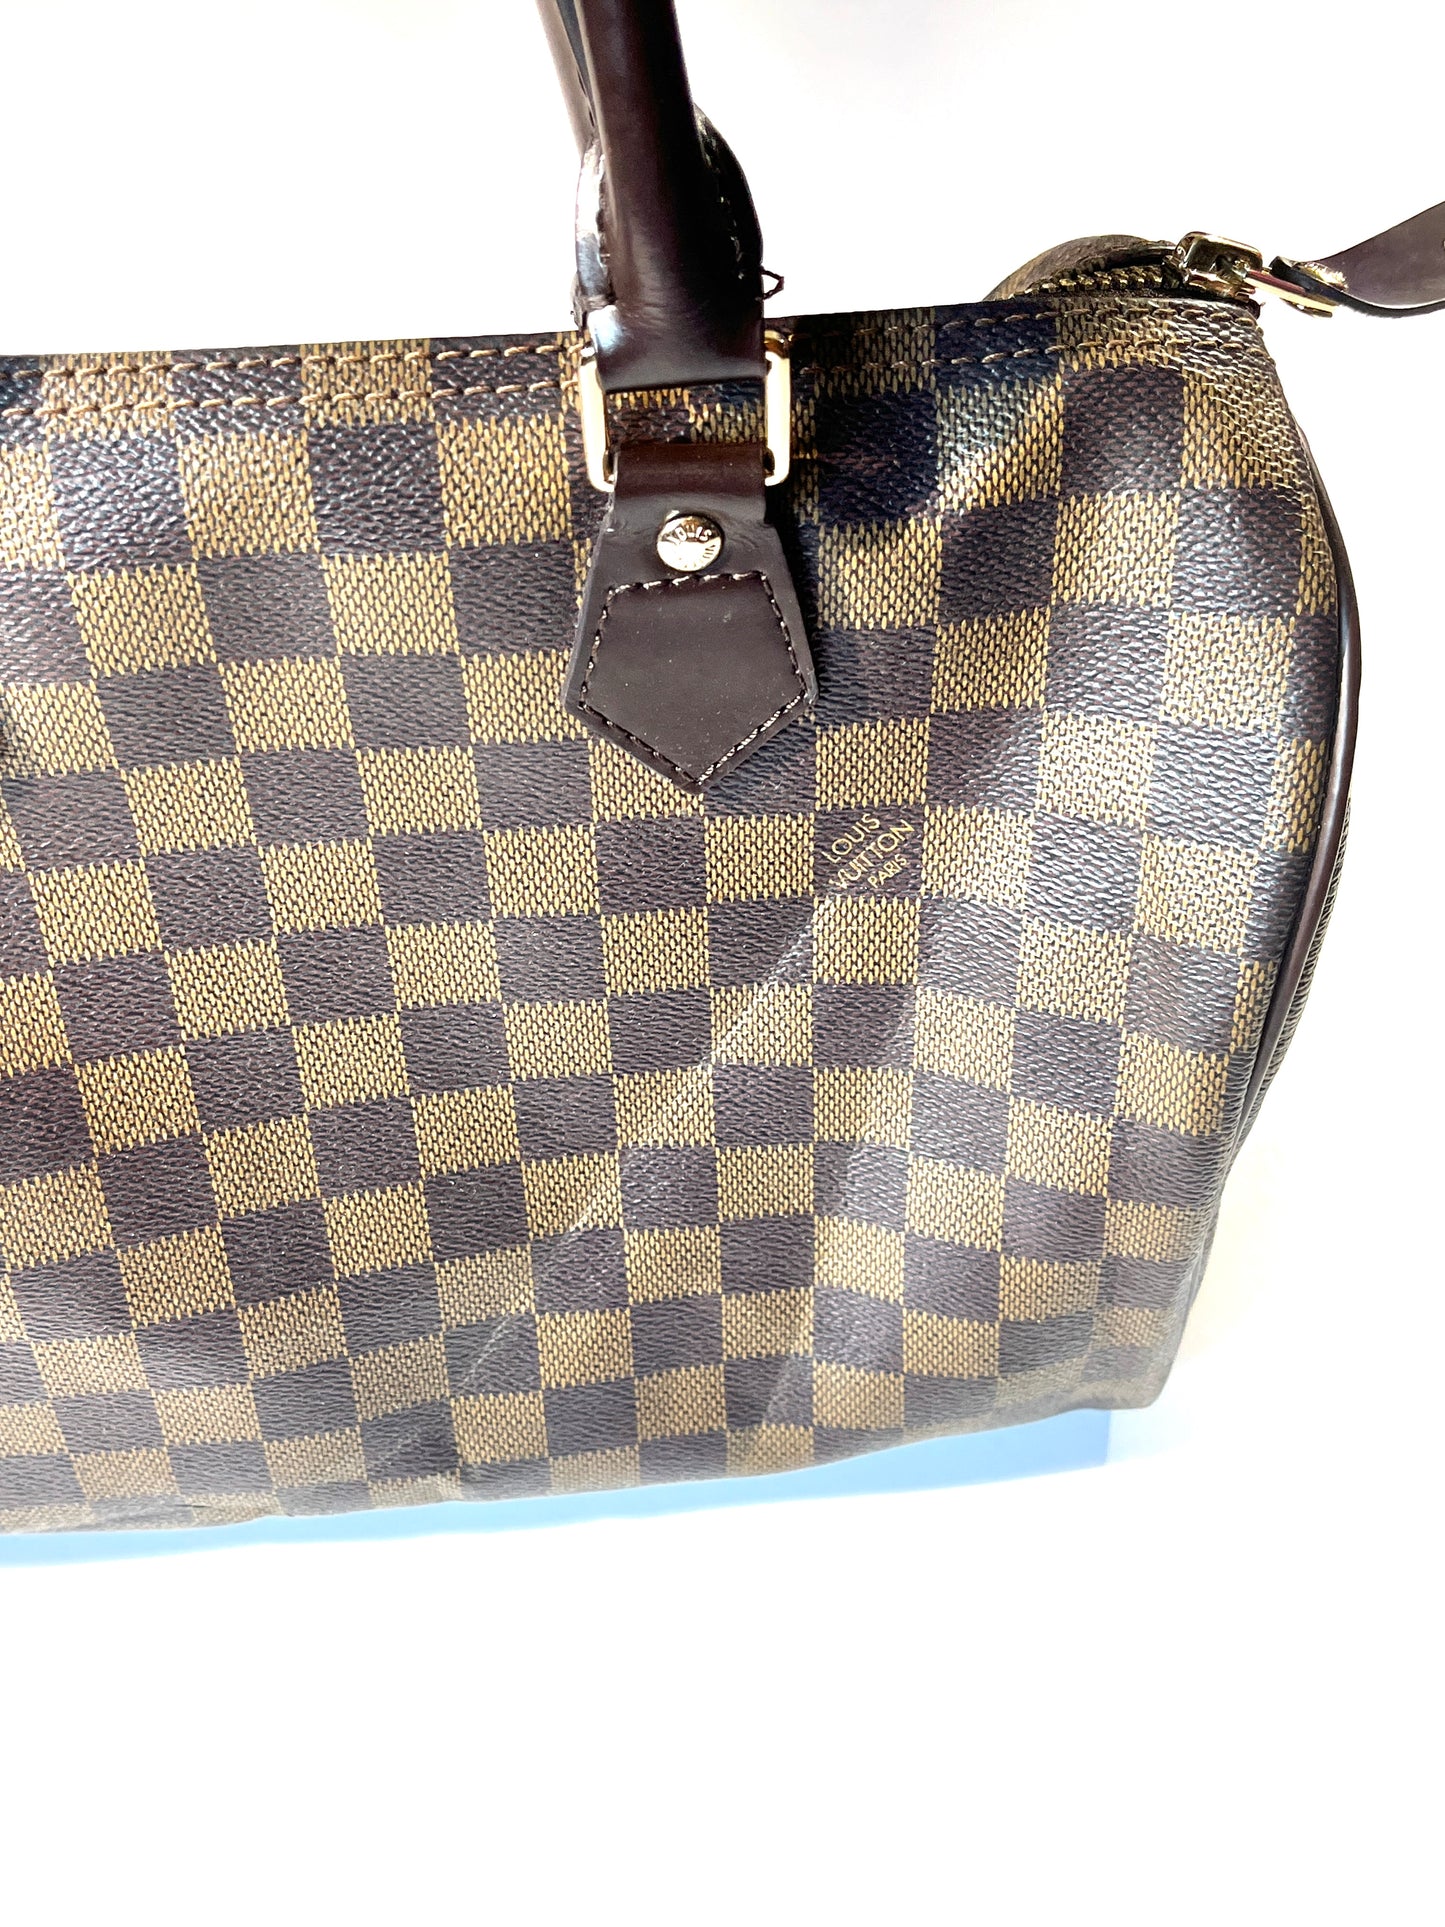 Vintage Louis Vuitton Hand Bag